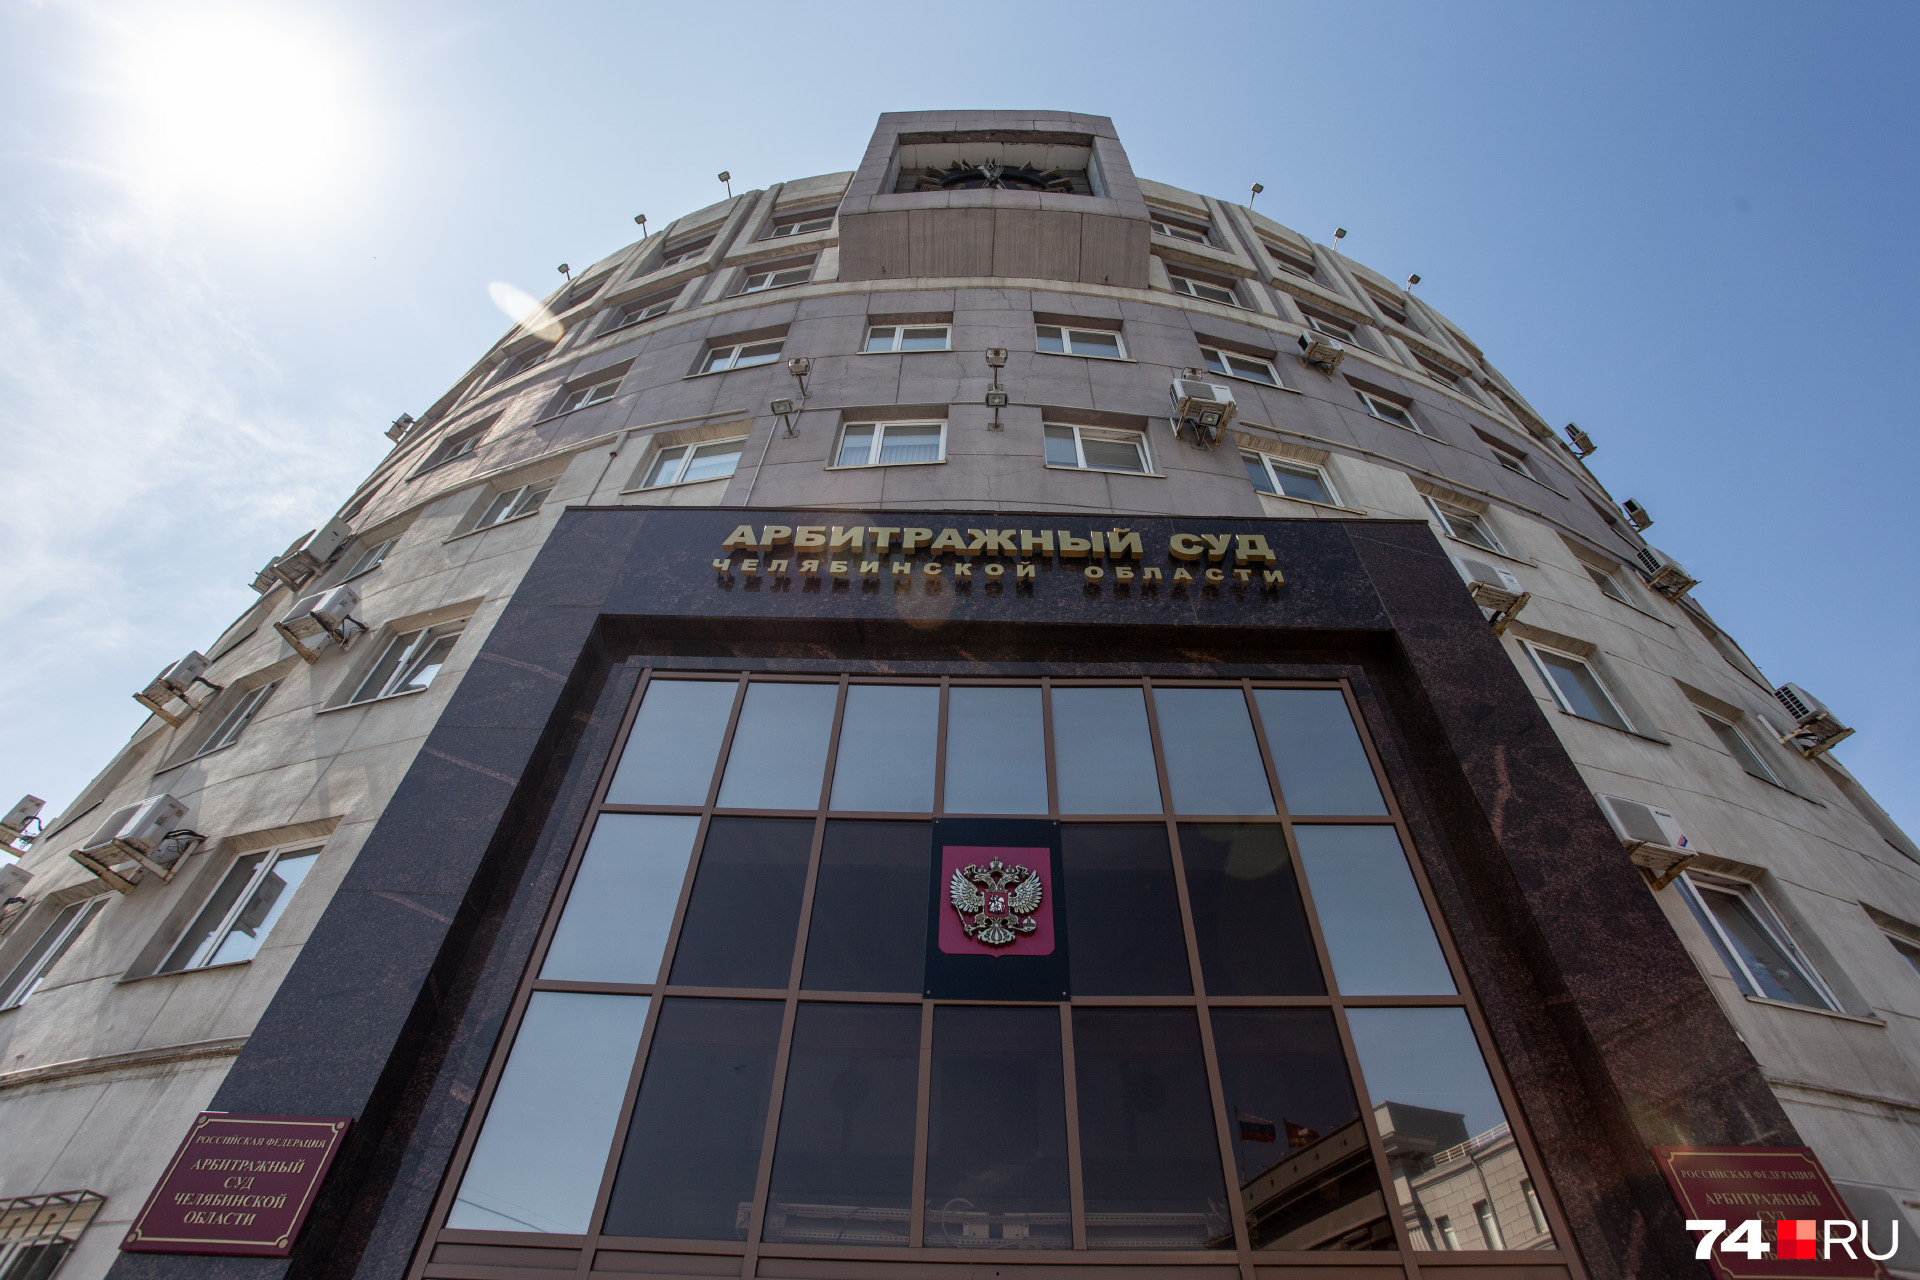 Арбитражный суд рассматривает три дела о банкротстве «Челябинскгражданстроя» — два от граждан и одно от юристов 